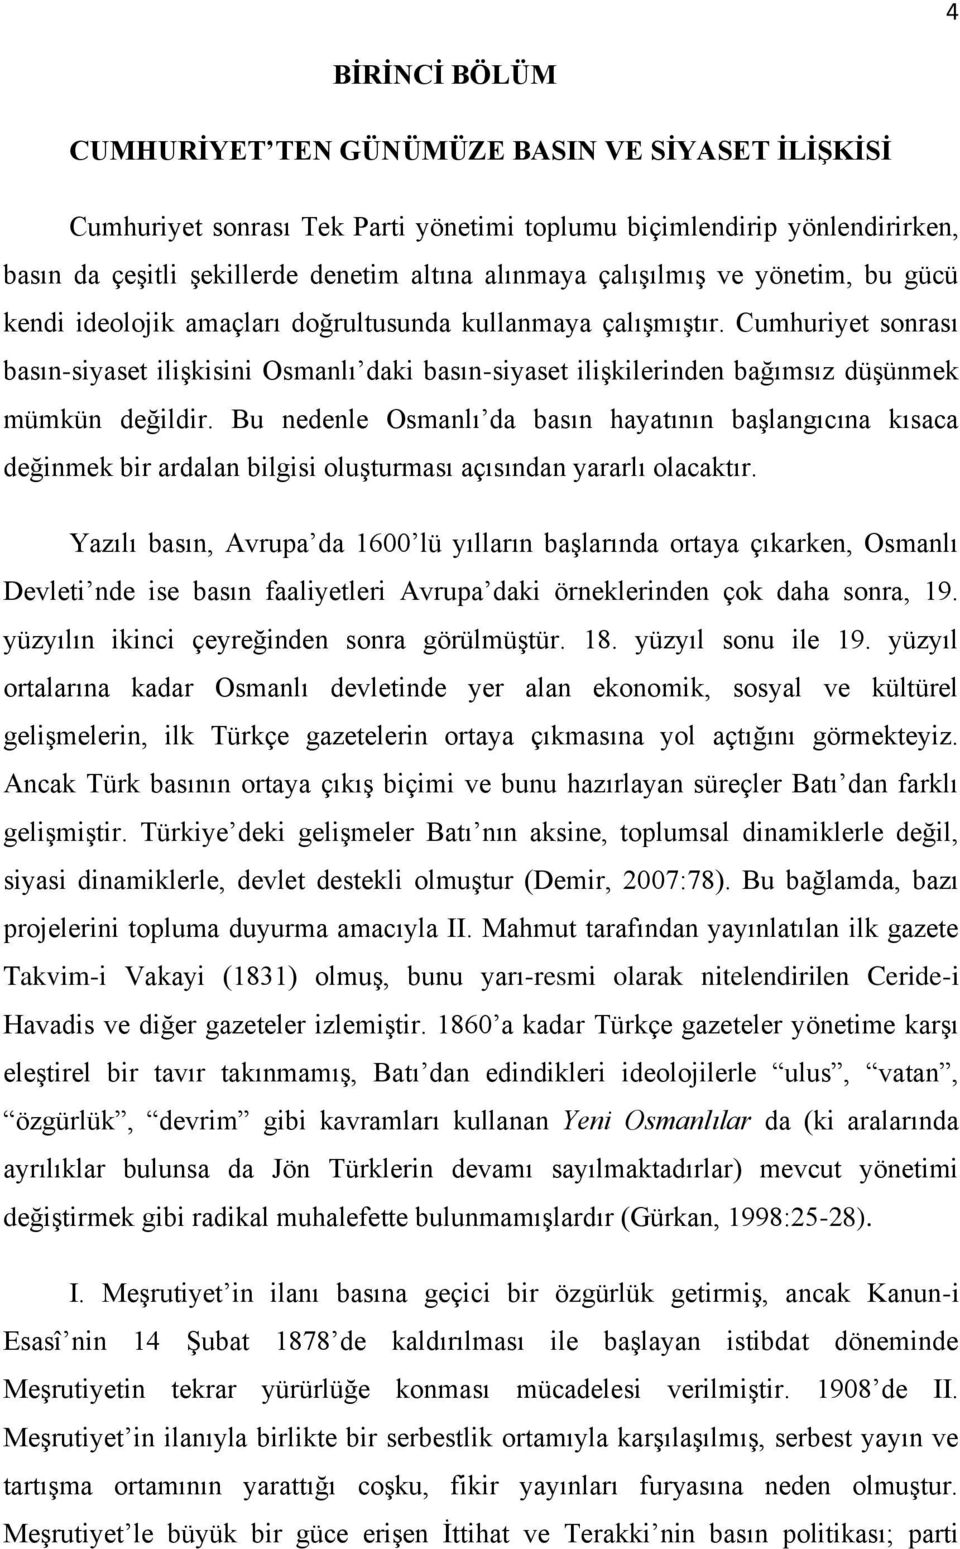 Cumhuriyet sonrası basın-siyaset iliģkisini Osmanlı daki basın-siyaset iliģkilerinden bağımsız düģünmek mümkün değildir.